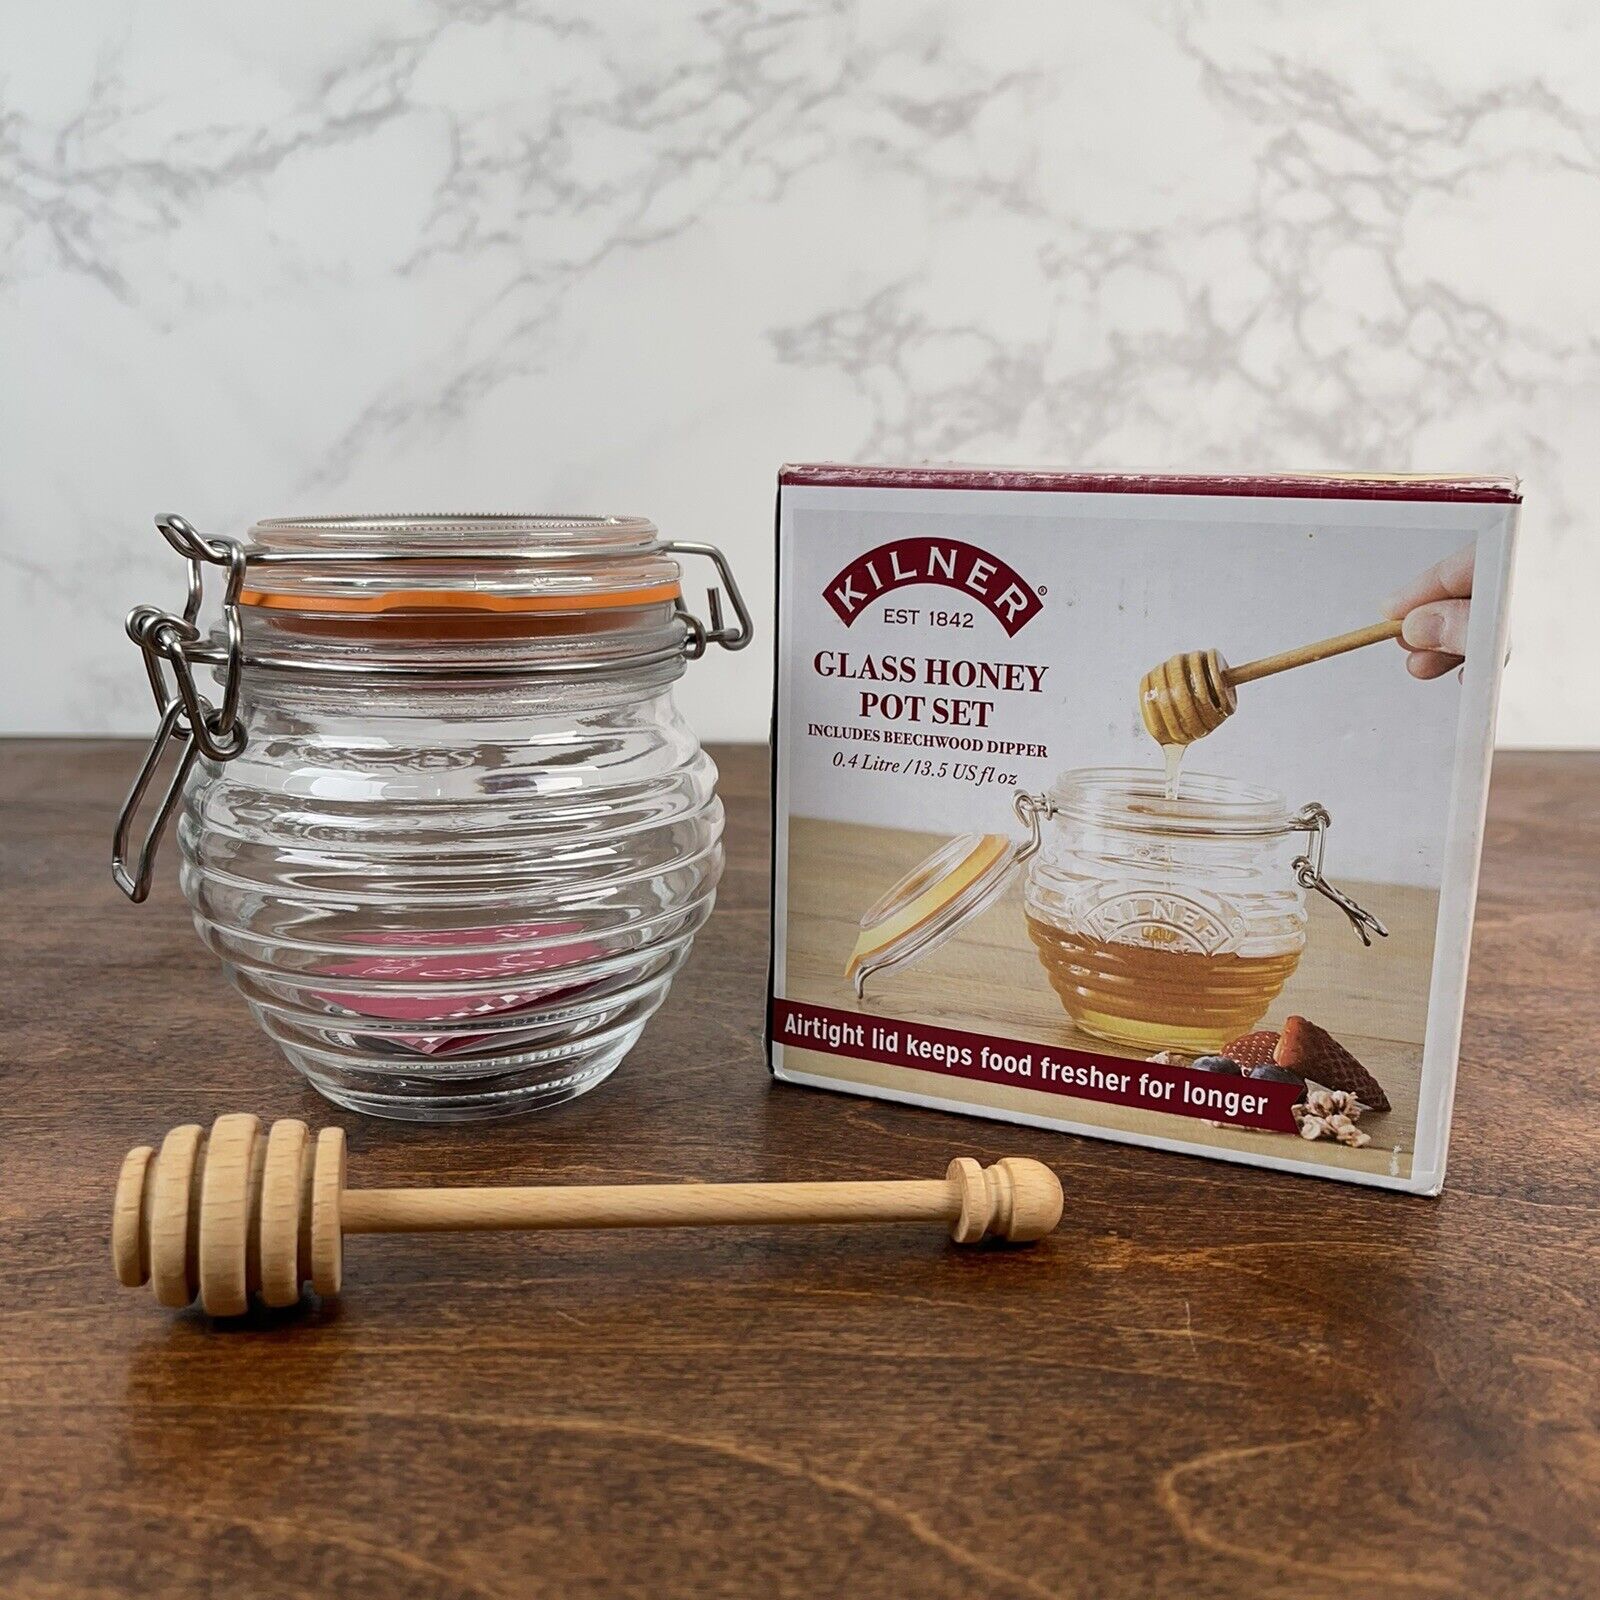 Kilner Glass Honey Pot Set Beechwood Dipper Airtight Lid NEW